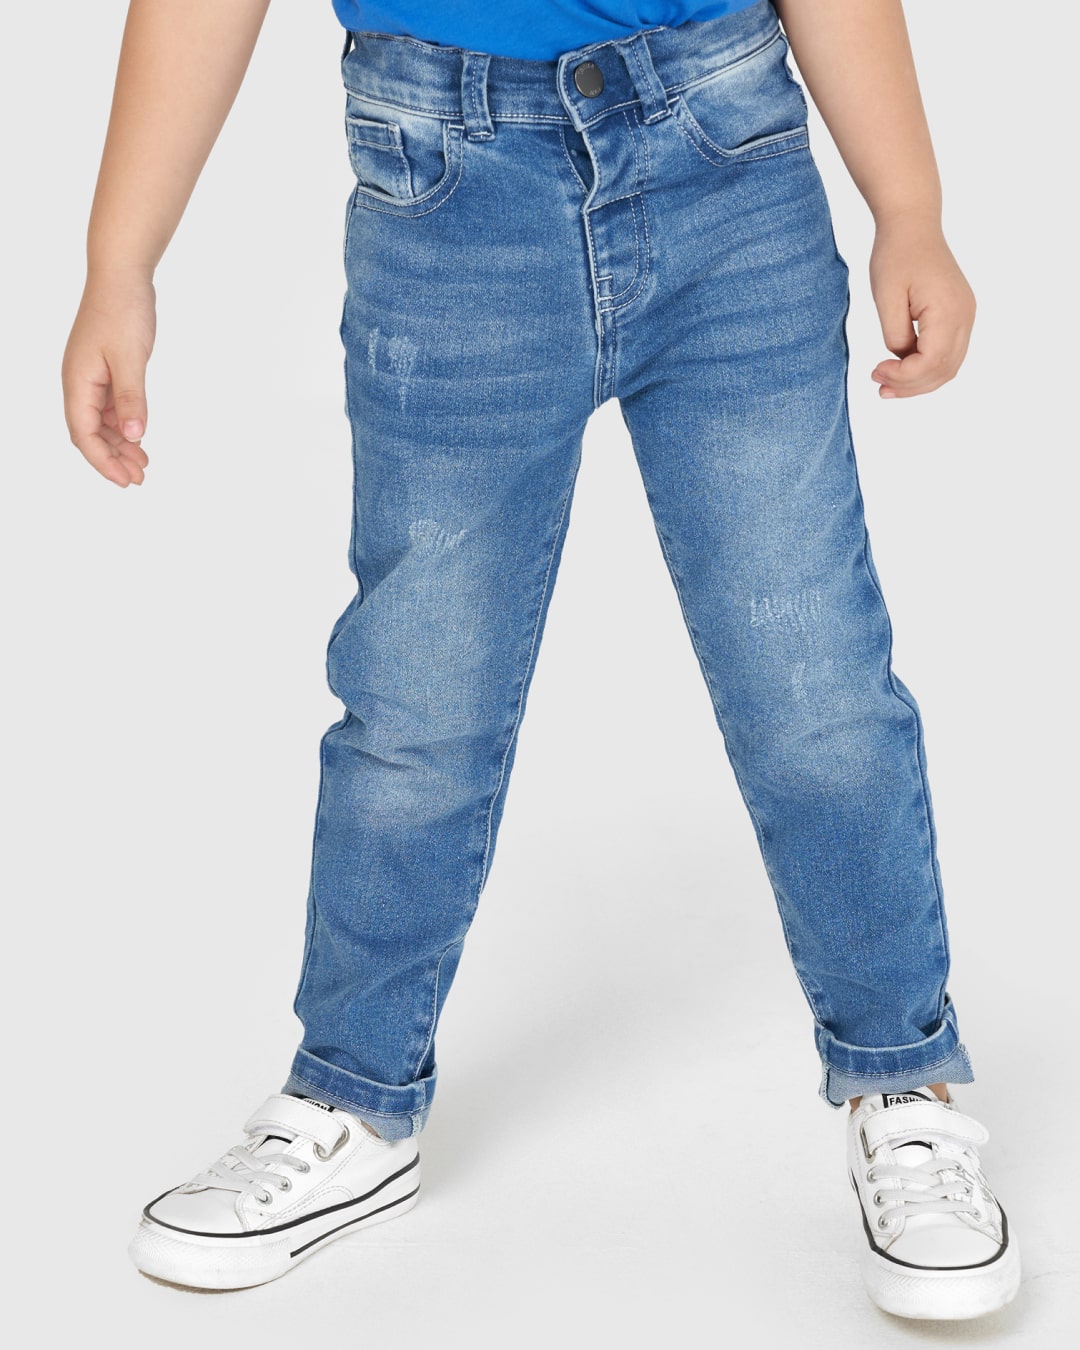 Quần jeans bé trai Canifa 2BJ21C001-SJ637 màu xanh nhạt